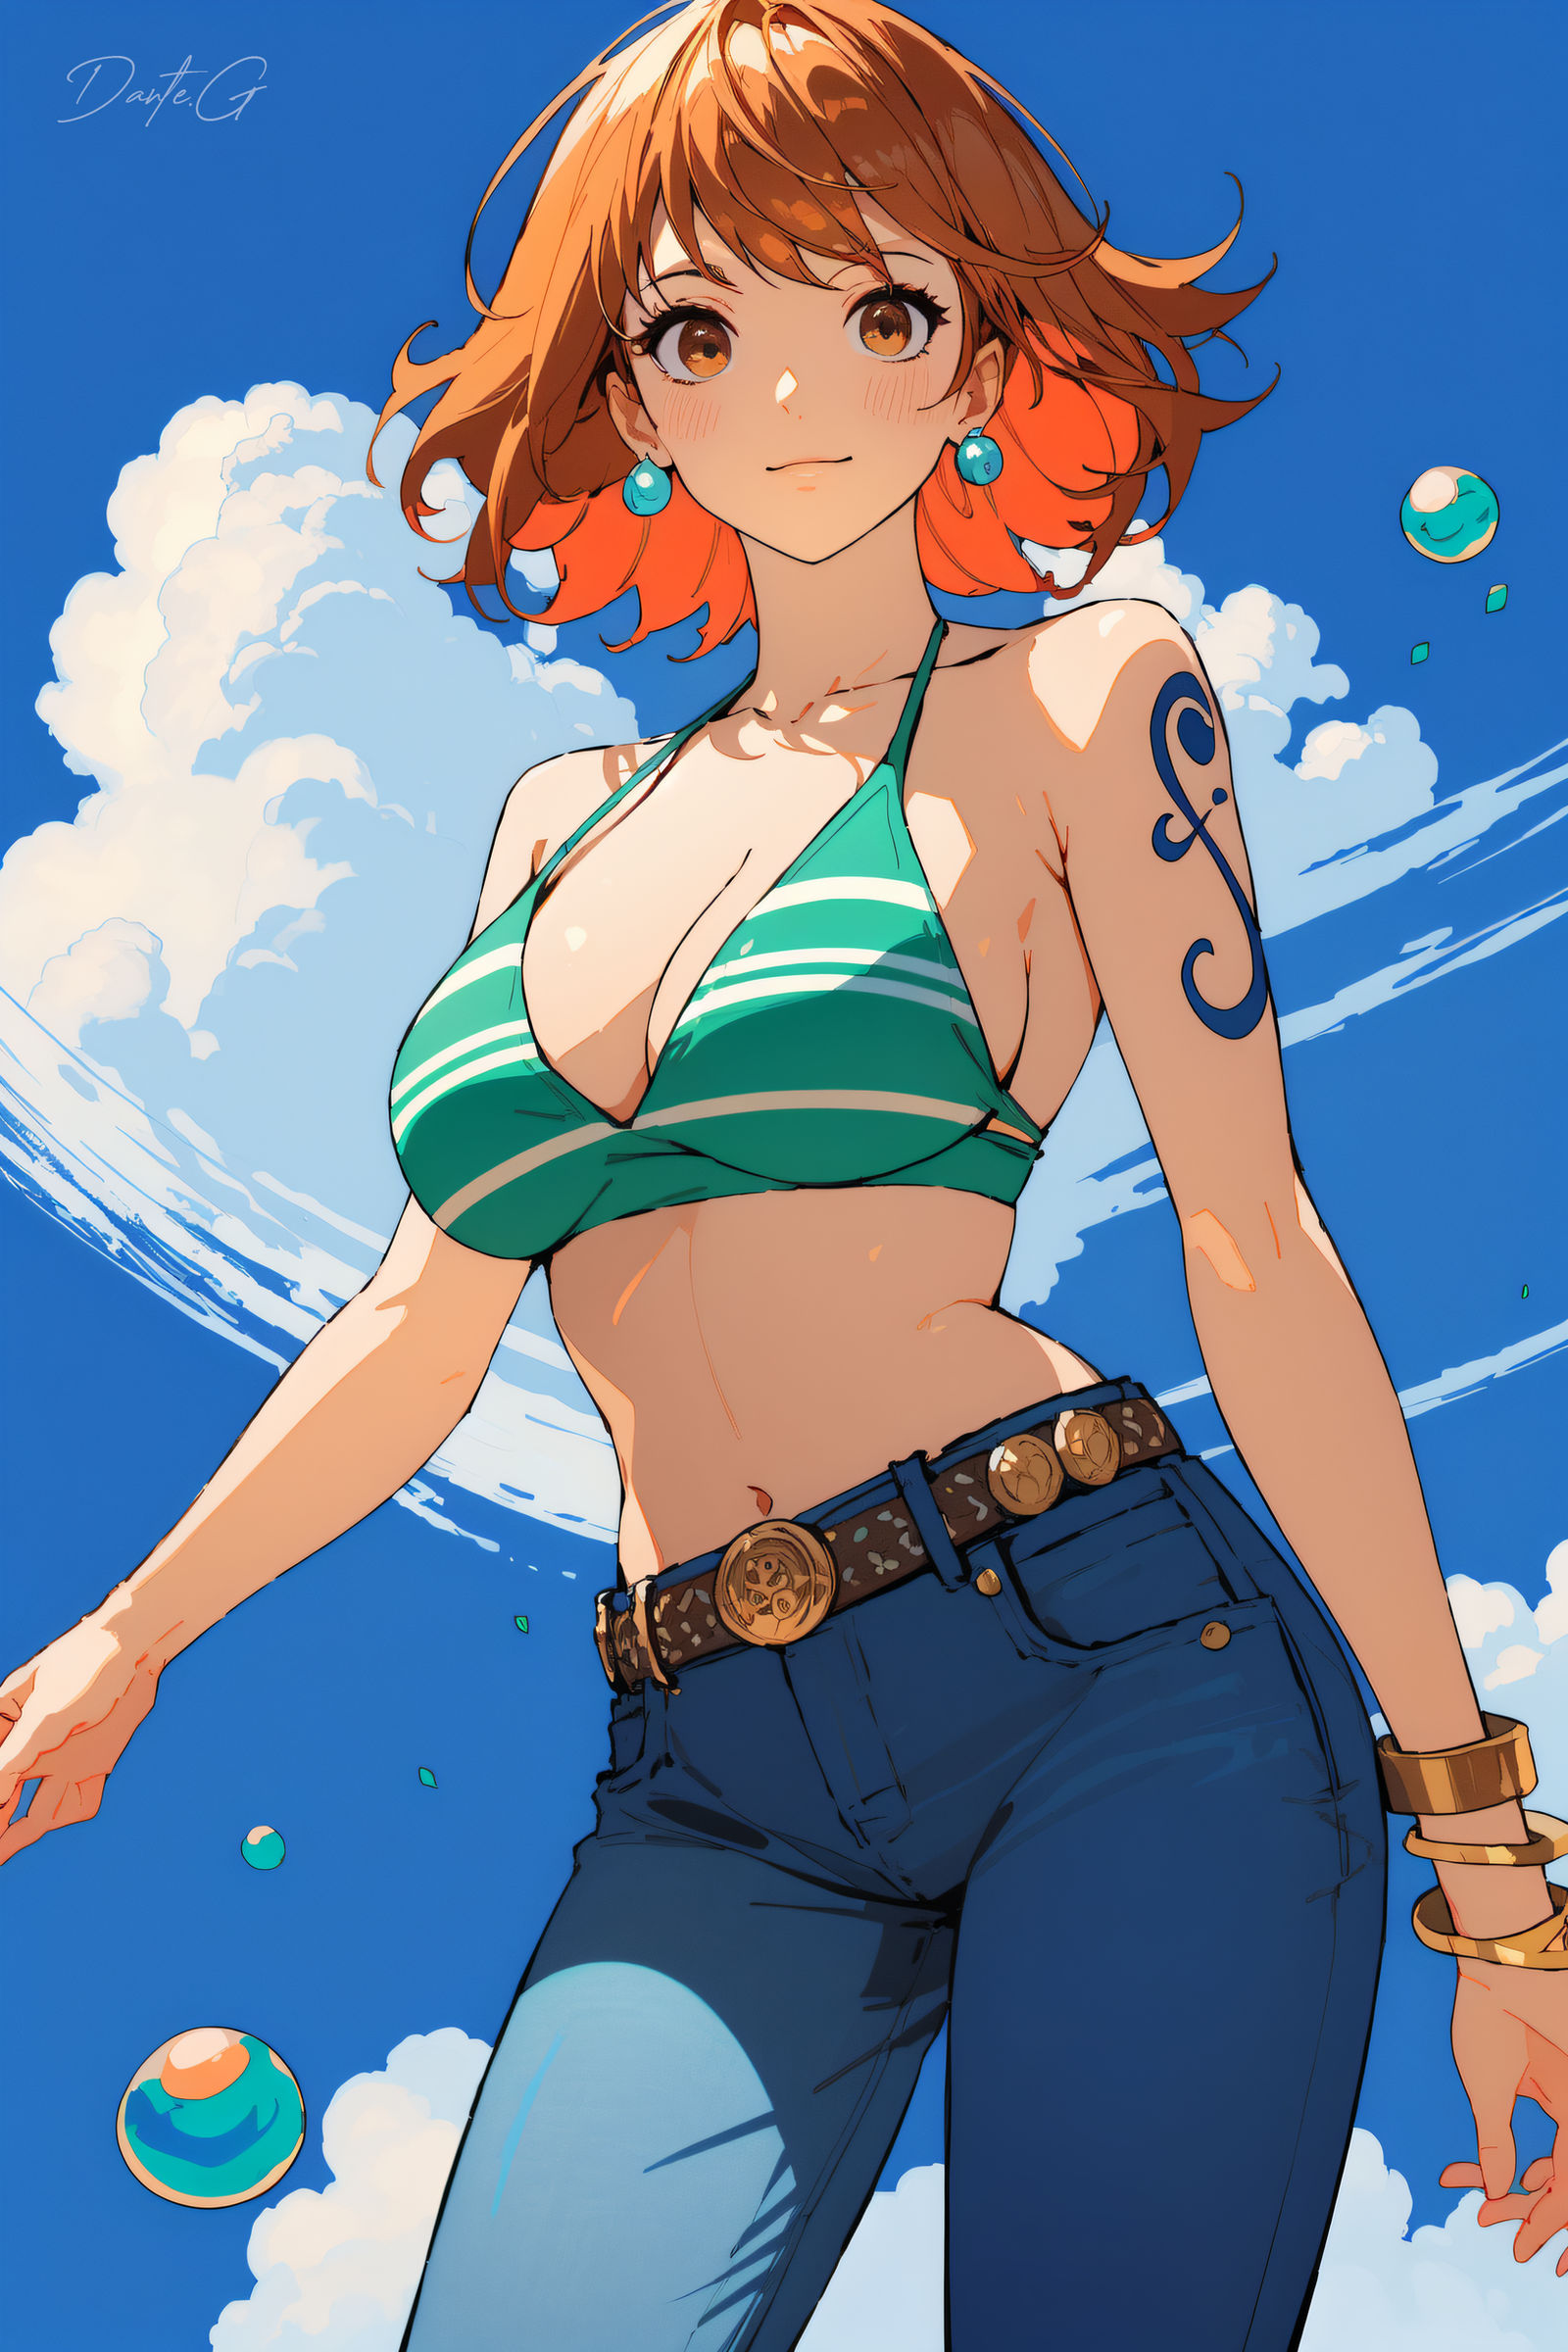 Nami (One Piece) by Dantegonist on DeviantArt